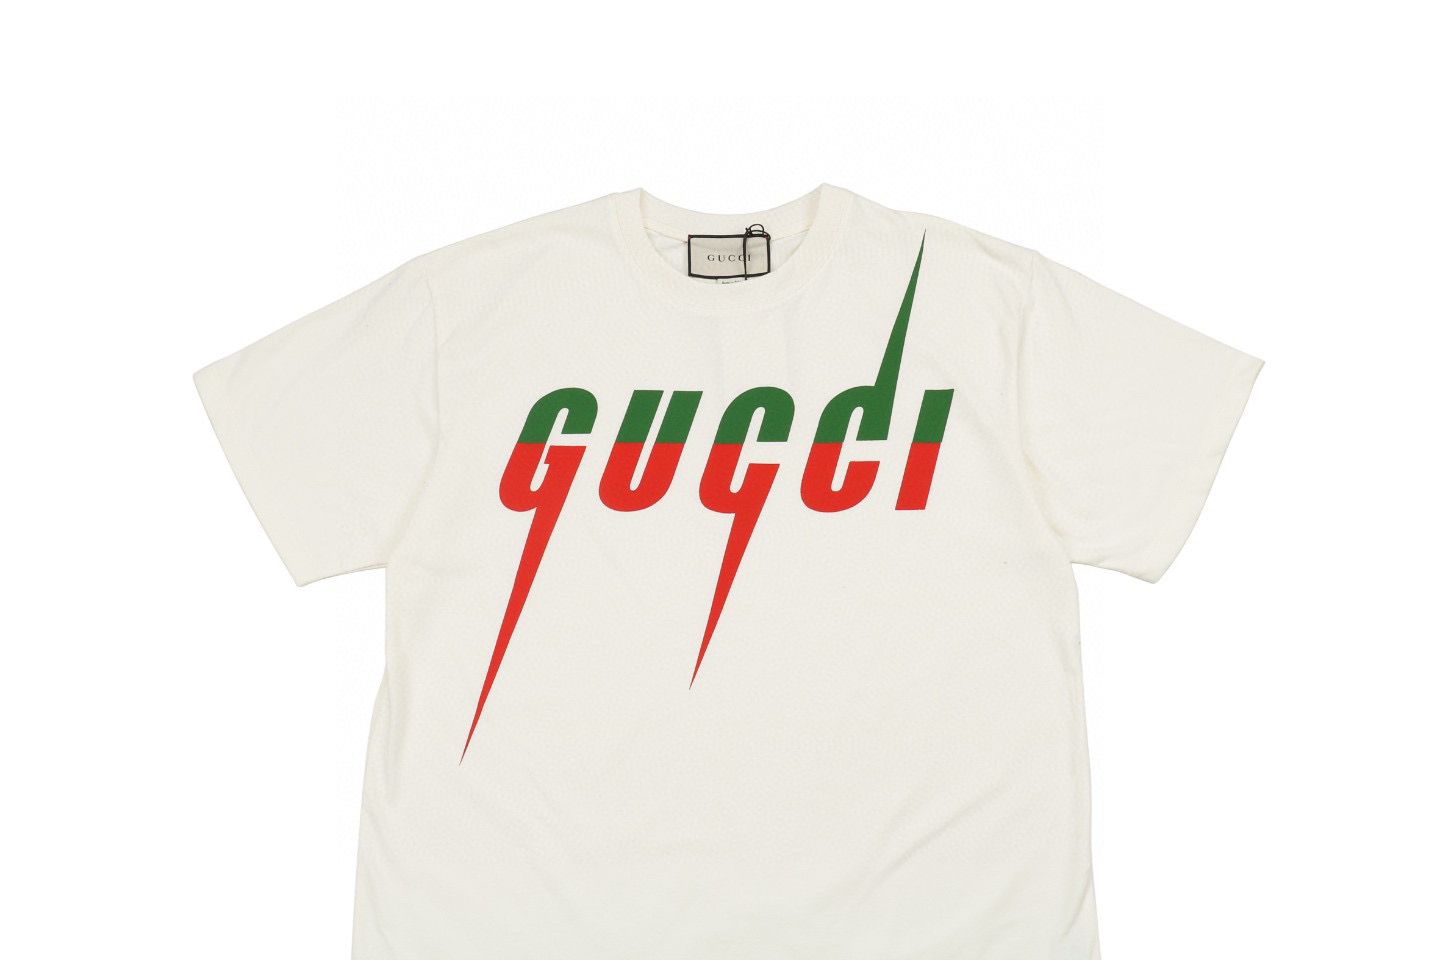 Gucc1 Blade Print T-Shirt Green Red